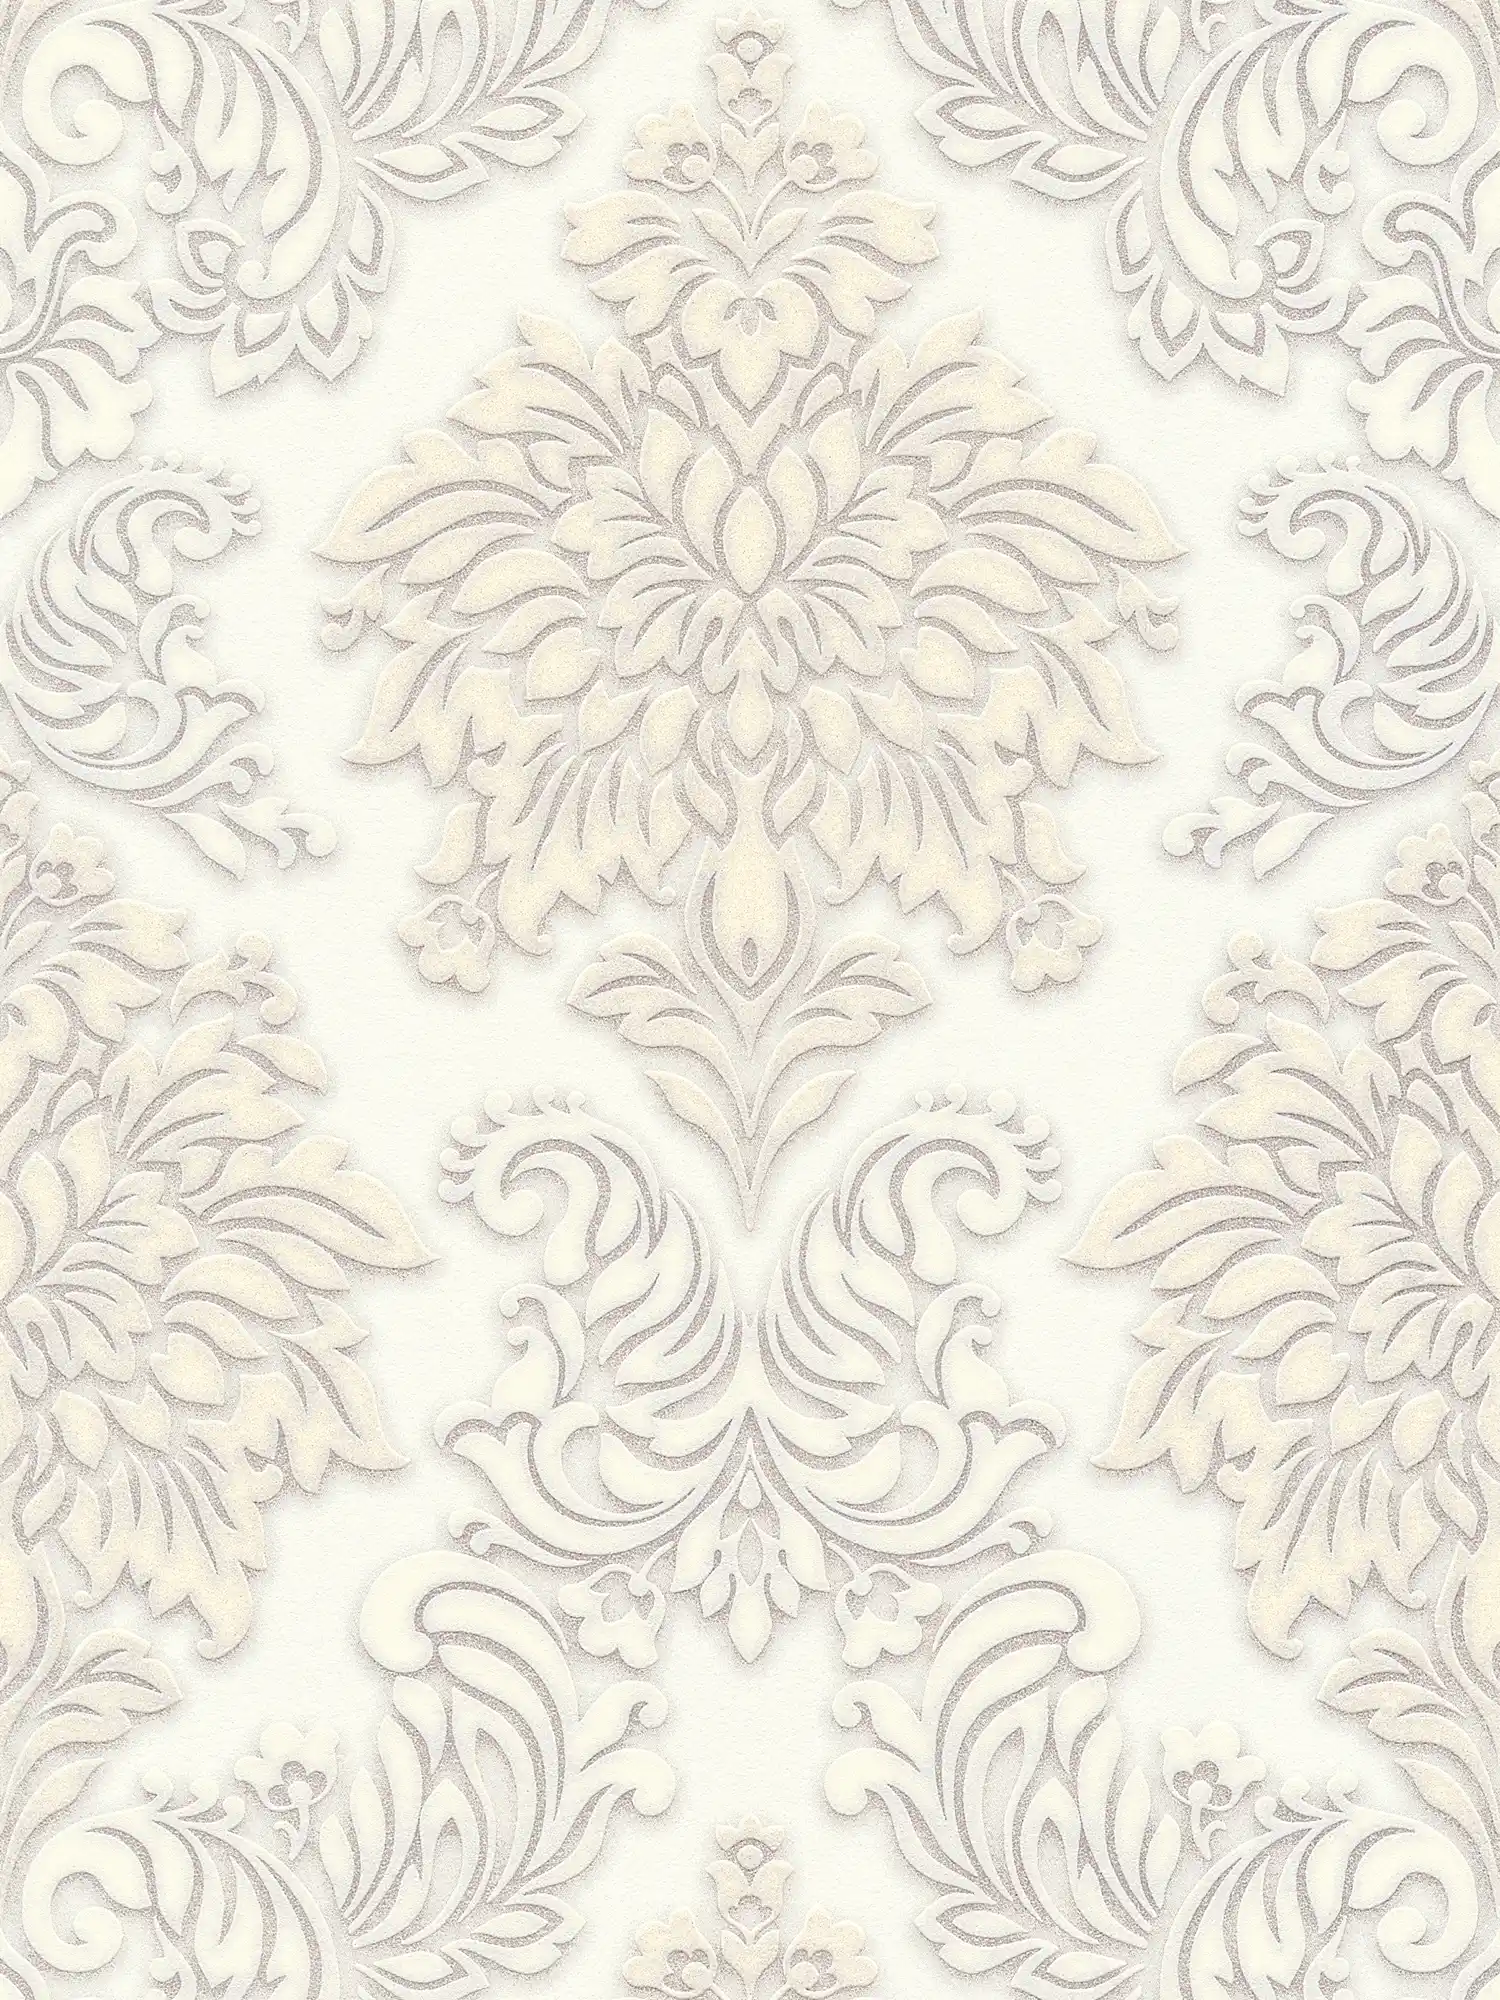         Barock Tapete Ornamente mit Glitzereffekt – Weiß, Silber, Beige
    